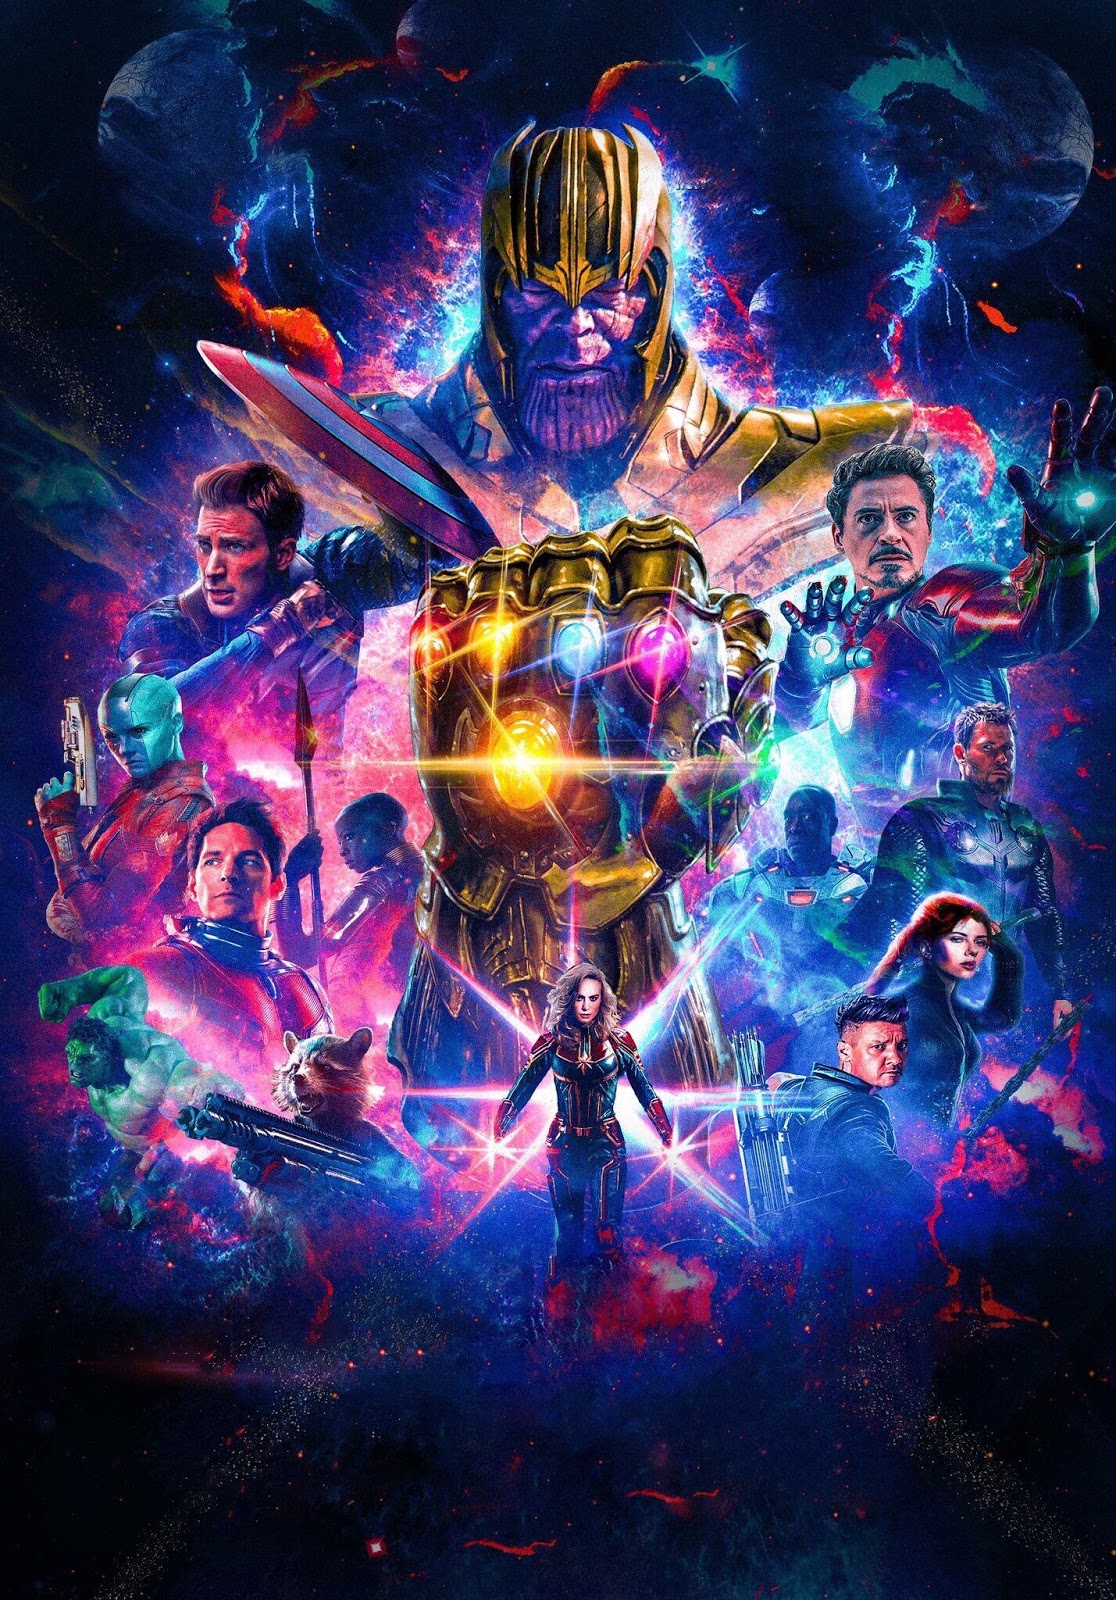 25+] Marvel's Avengers: Endgame Wallpapers - WallpaperSafari